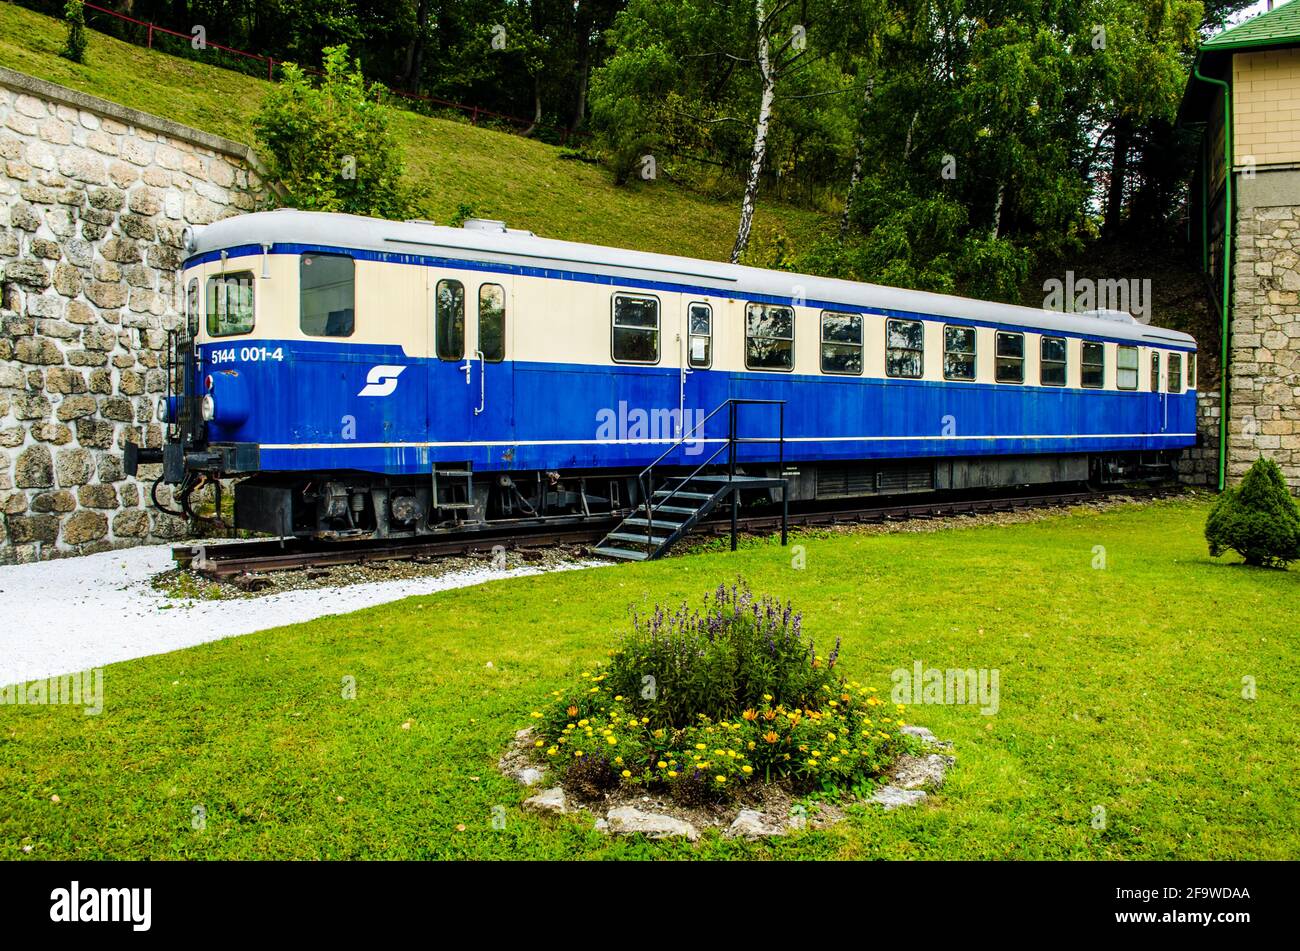 SEMMING, ÖSTERREICH, 3. OKTOBER 2015: Blick auf eine blaue Lokomotive vor dem Hauptbahnhof in semming, die ein Symbol dieser unesco-Welt ist Stockfoto